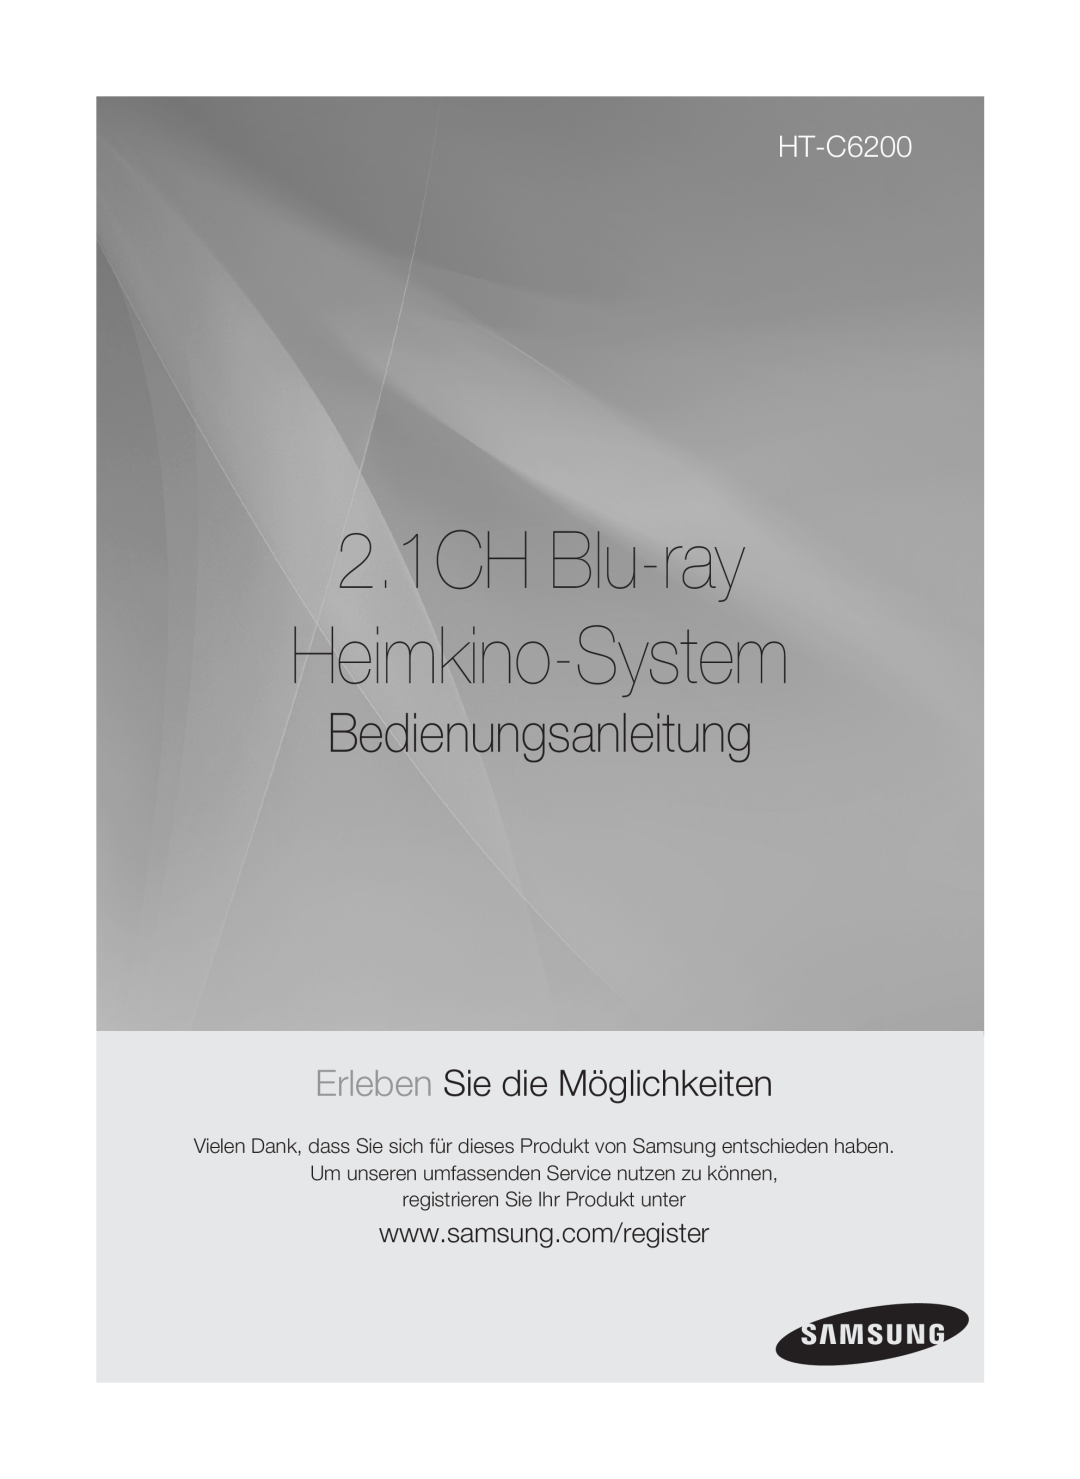 Samsung HT-C6200/XEF manual Home cinéma 2.1 Blu-ray, Manuel dutilisation, imaginez les possibilités 